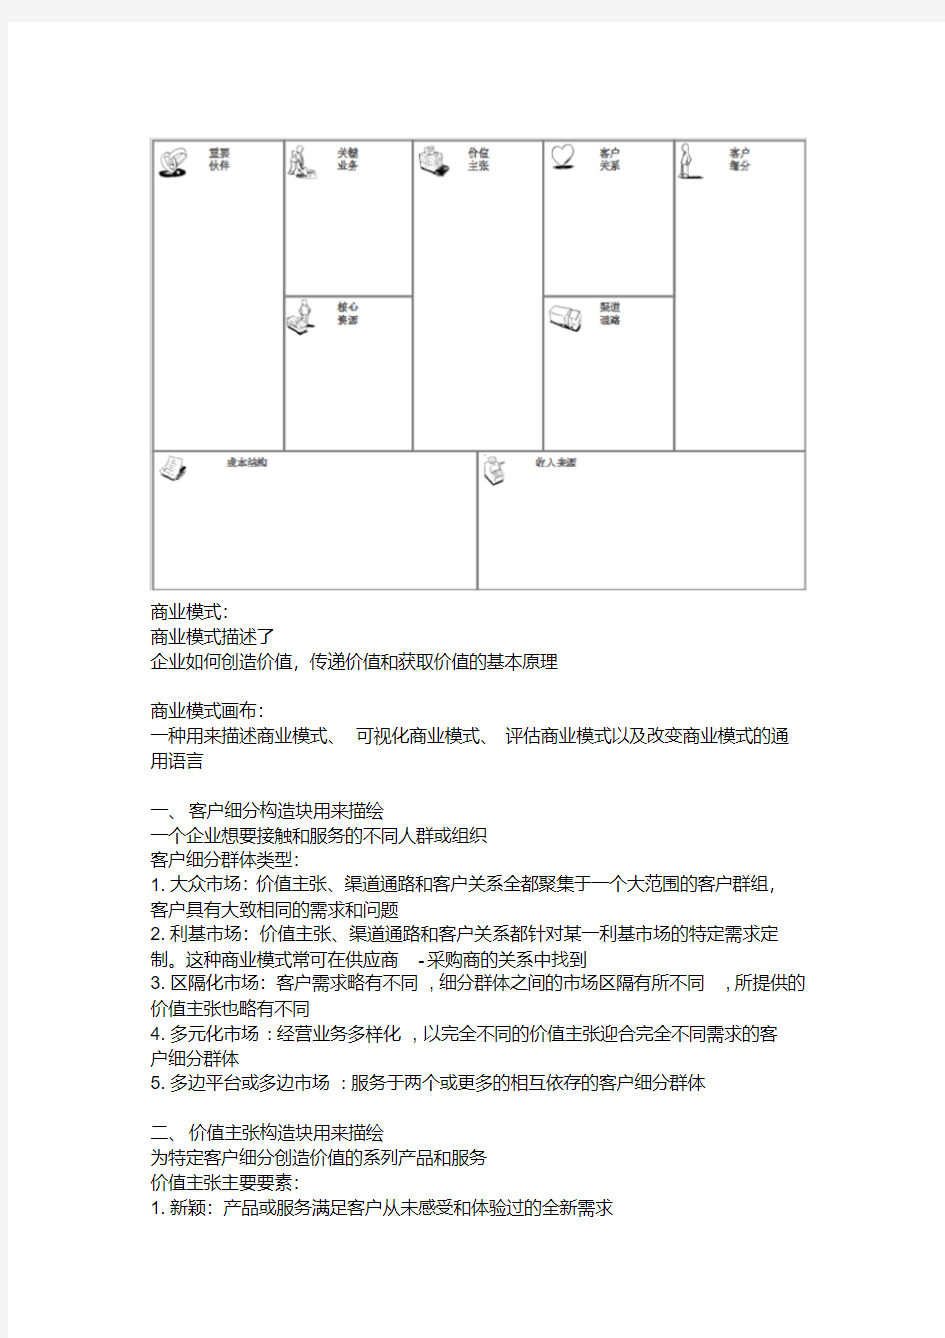 商业模式画布(九宫图)标准版